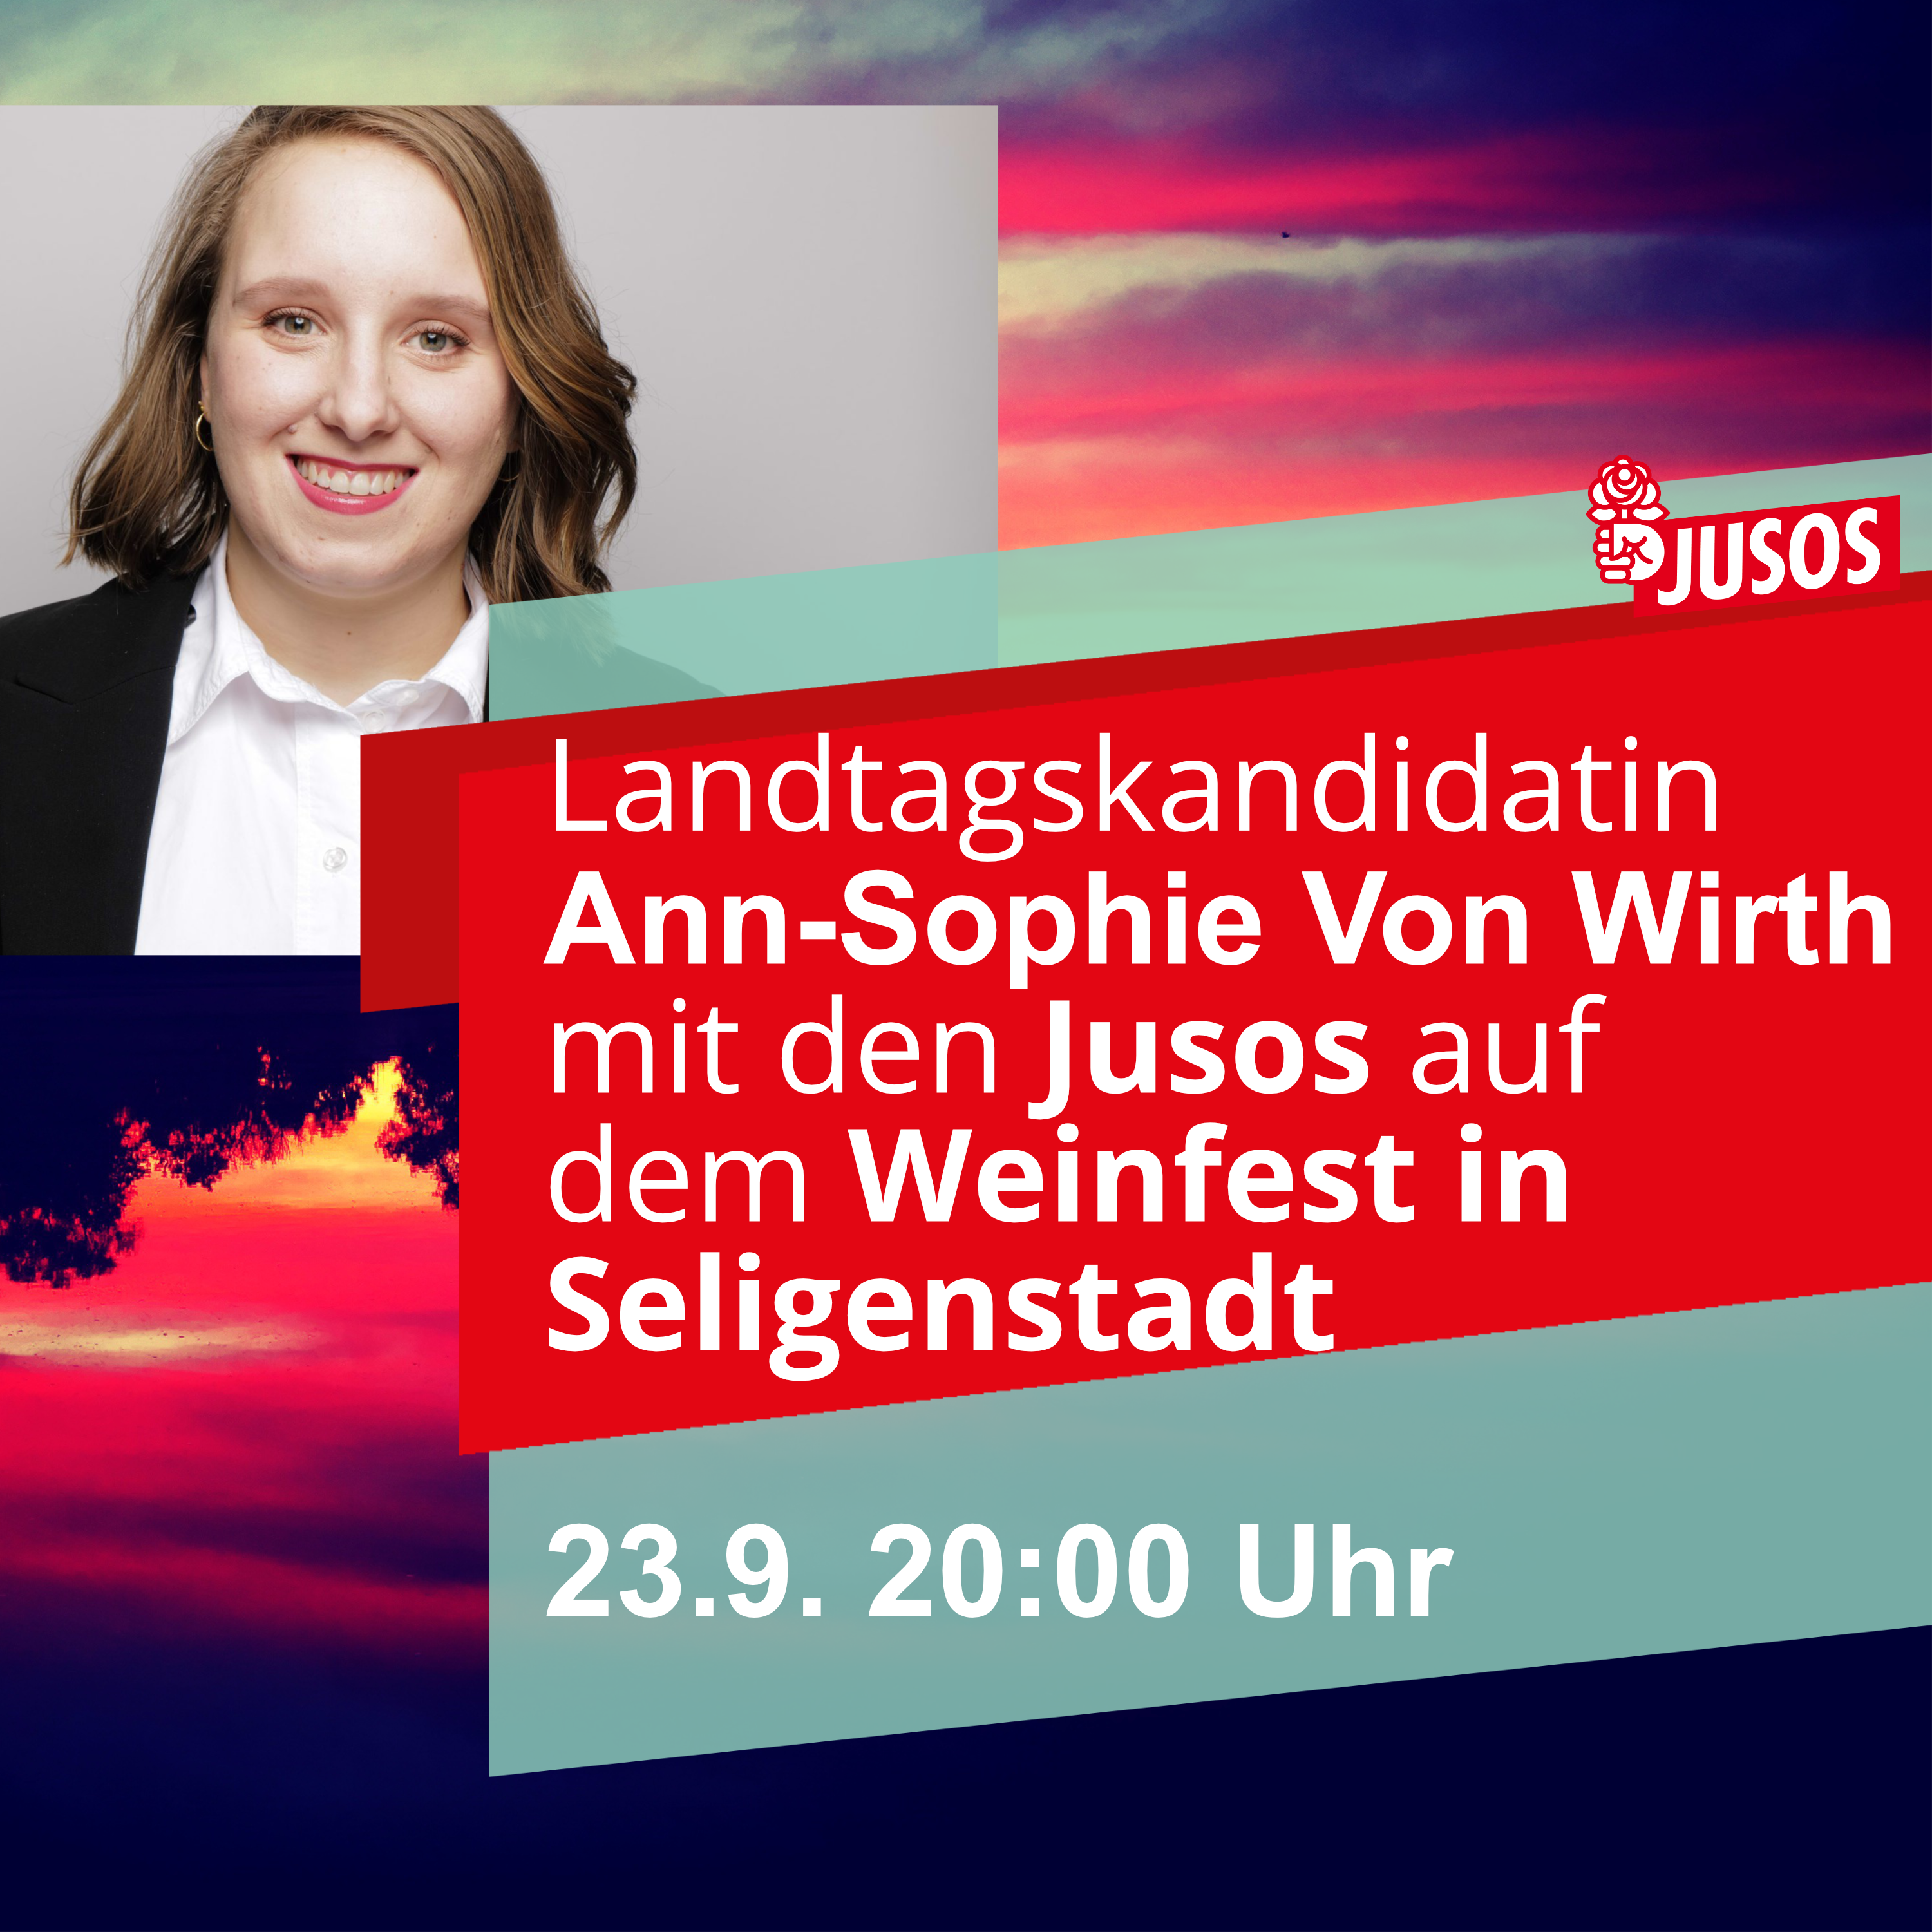 Landtagskandidatin Ann-Sophie von Wirth mit den Jusos auf dem Weinmarkt Seligenstadt